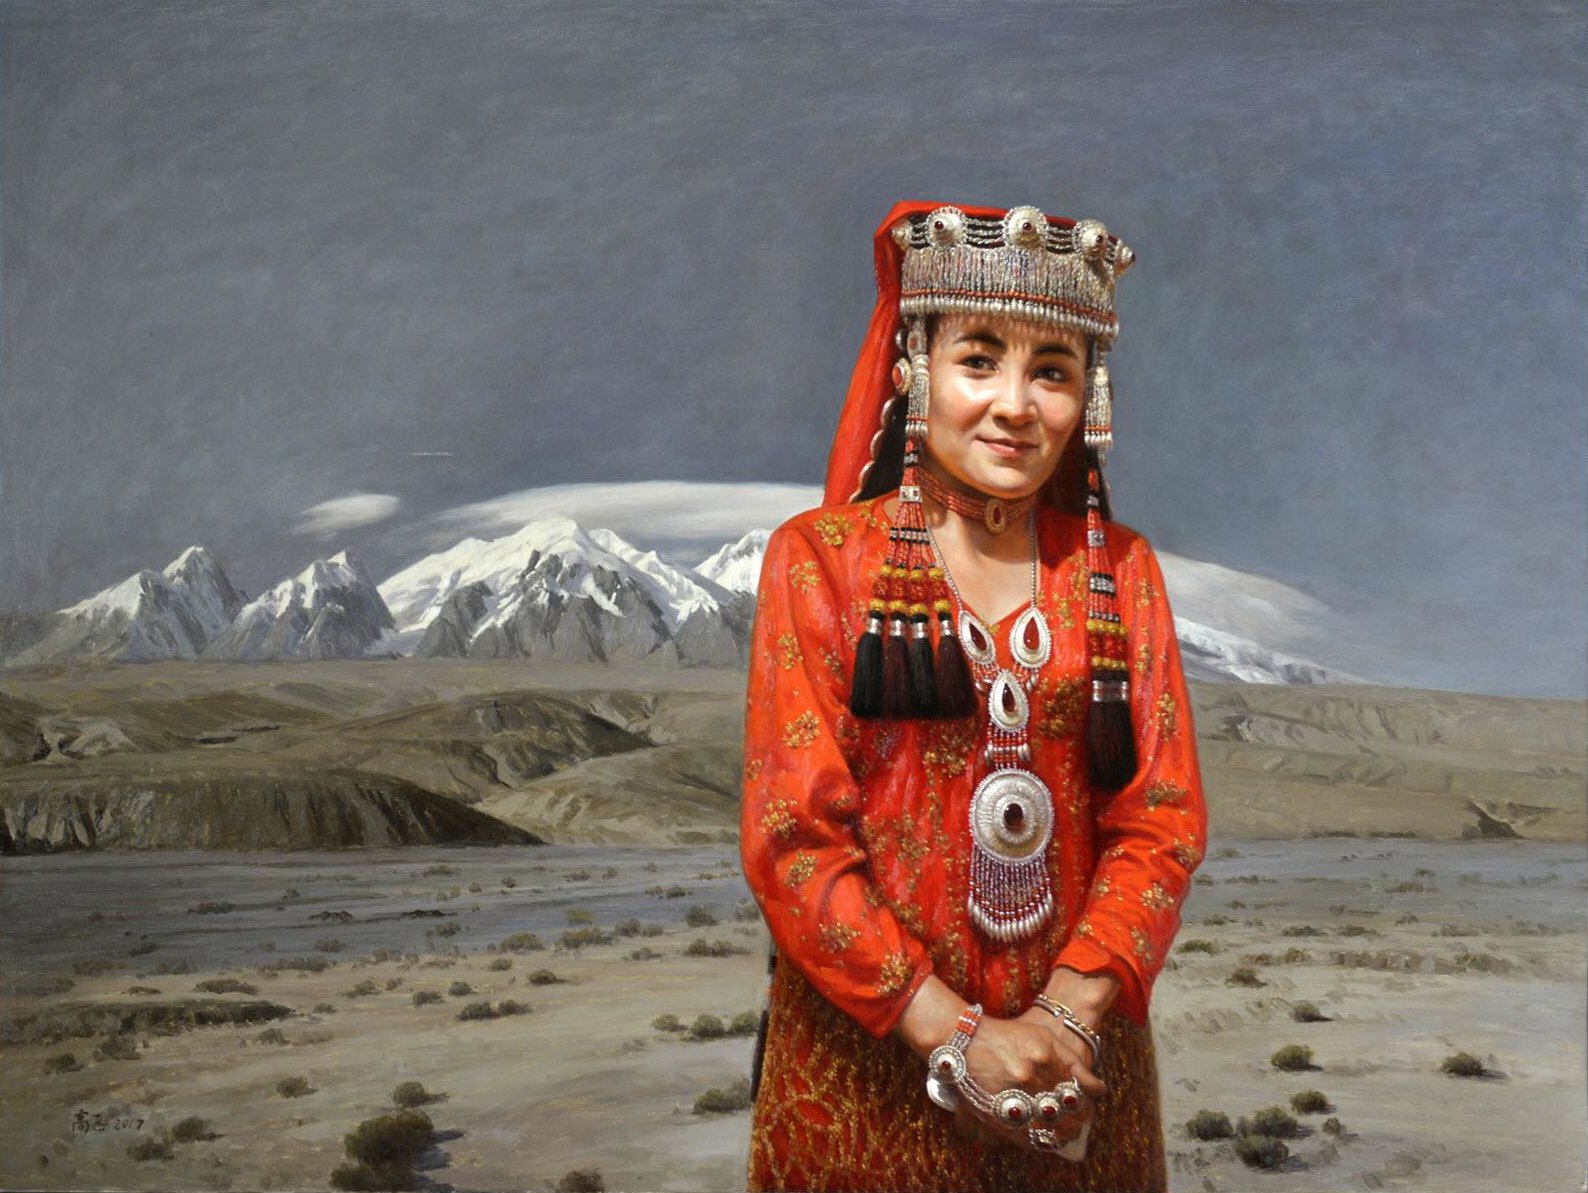 《塔吉克新娘》
Tajik Bride - 高飞 Fei Gao